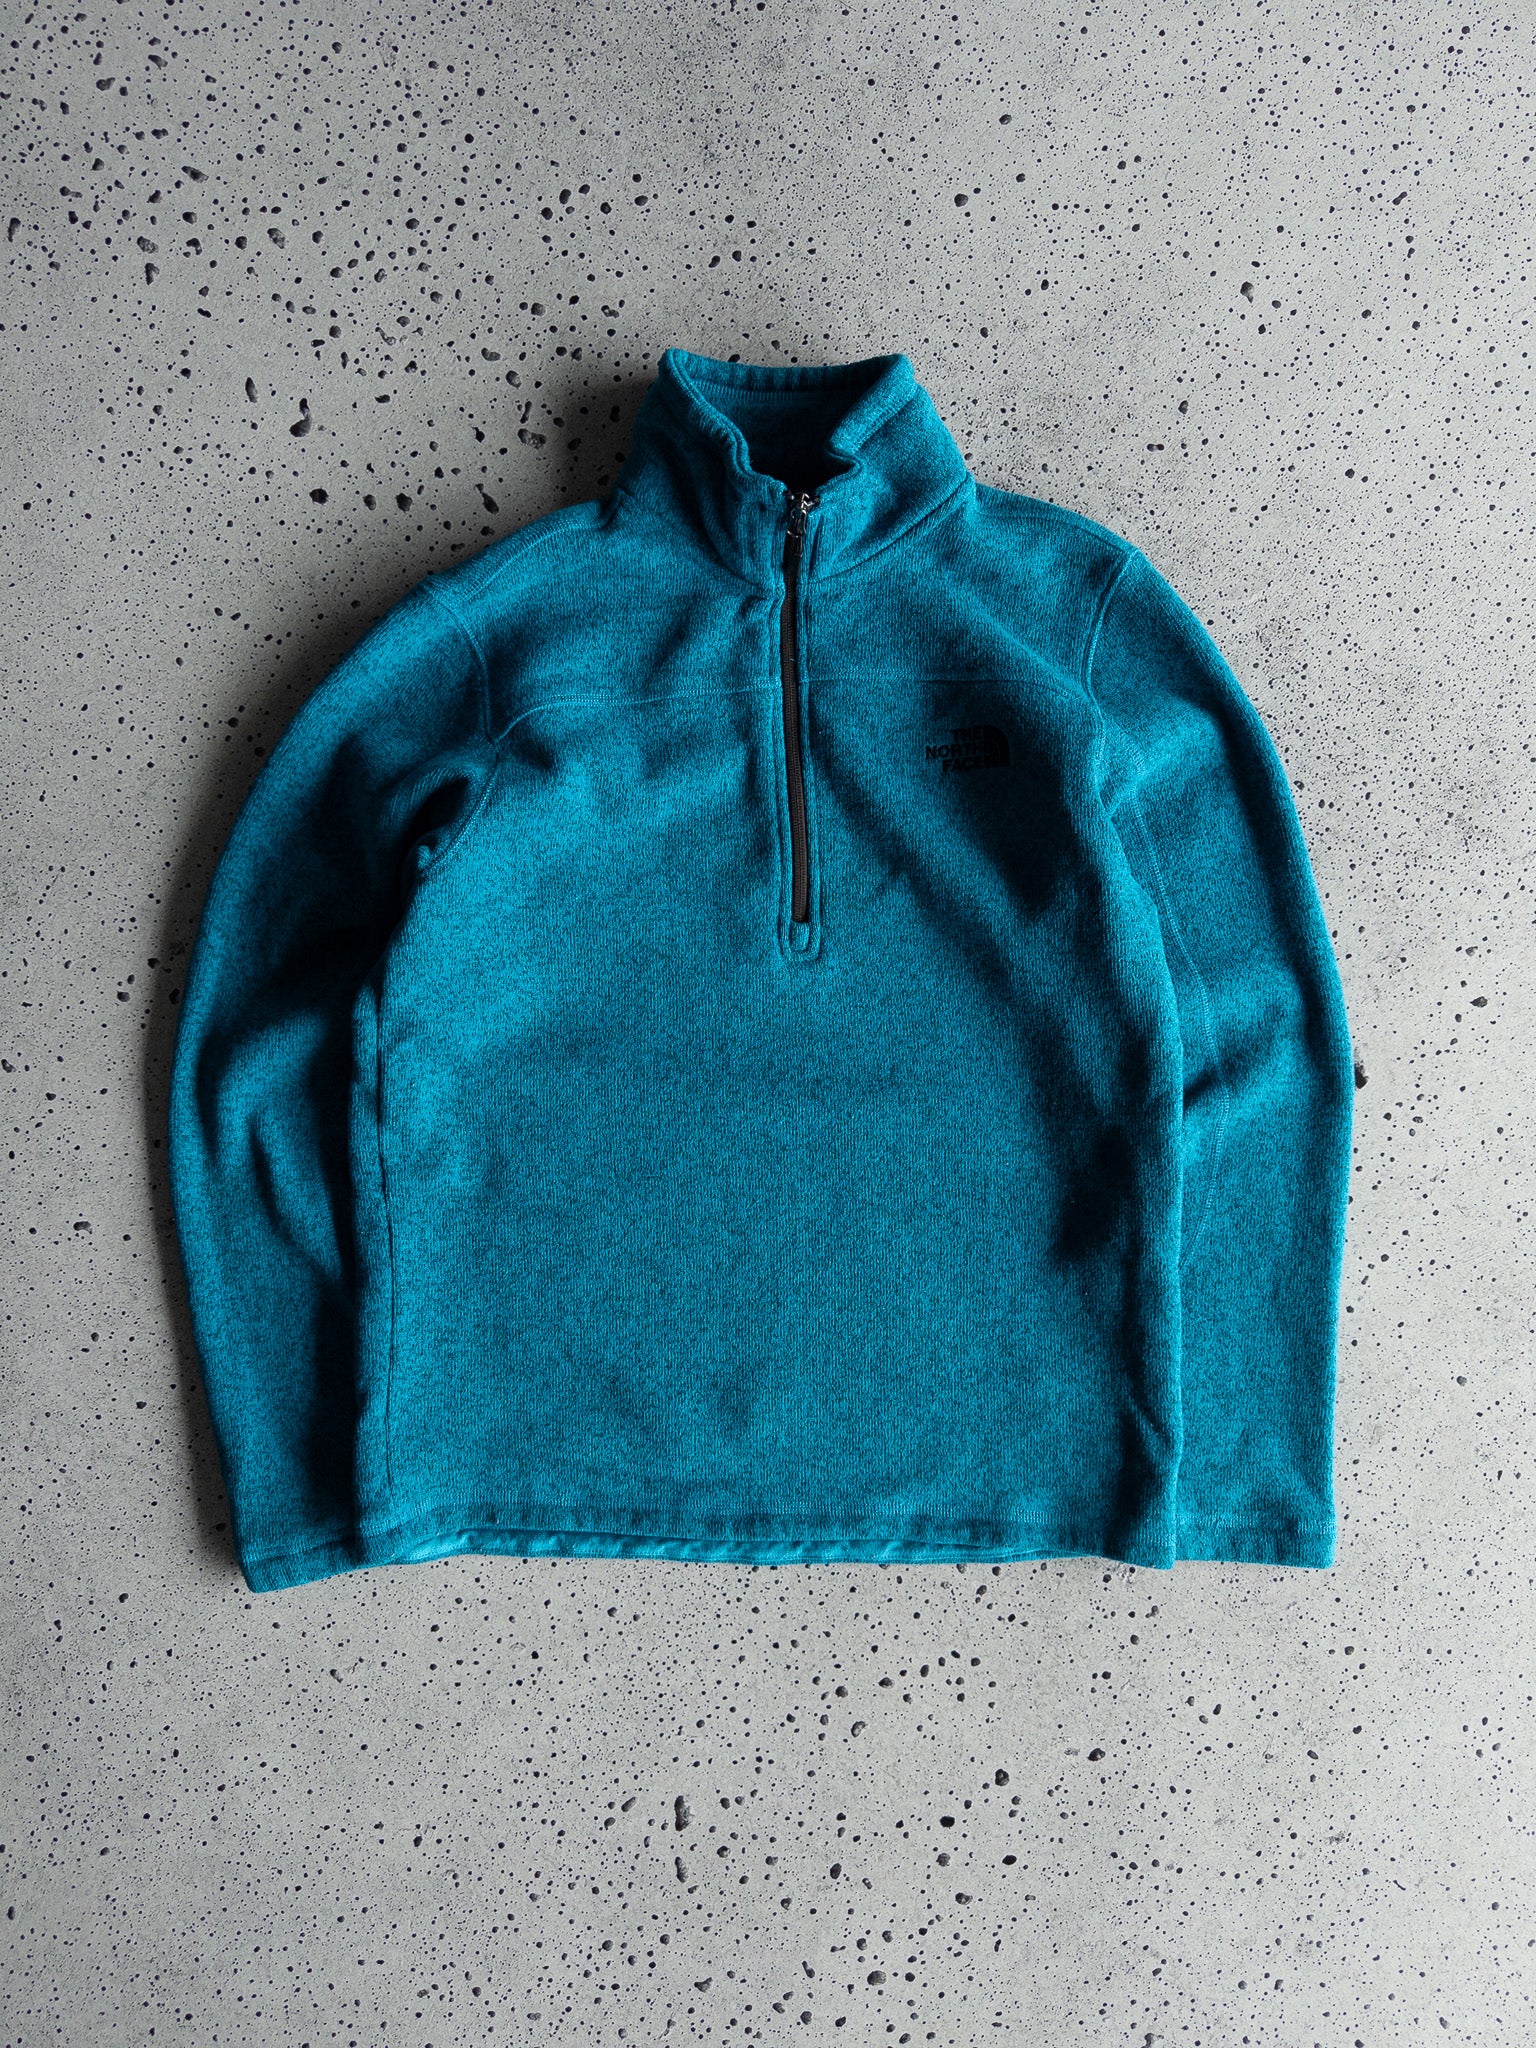 Vintage The North Face Fleece Quarter Zip Sweatshirt (M)